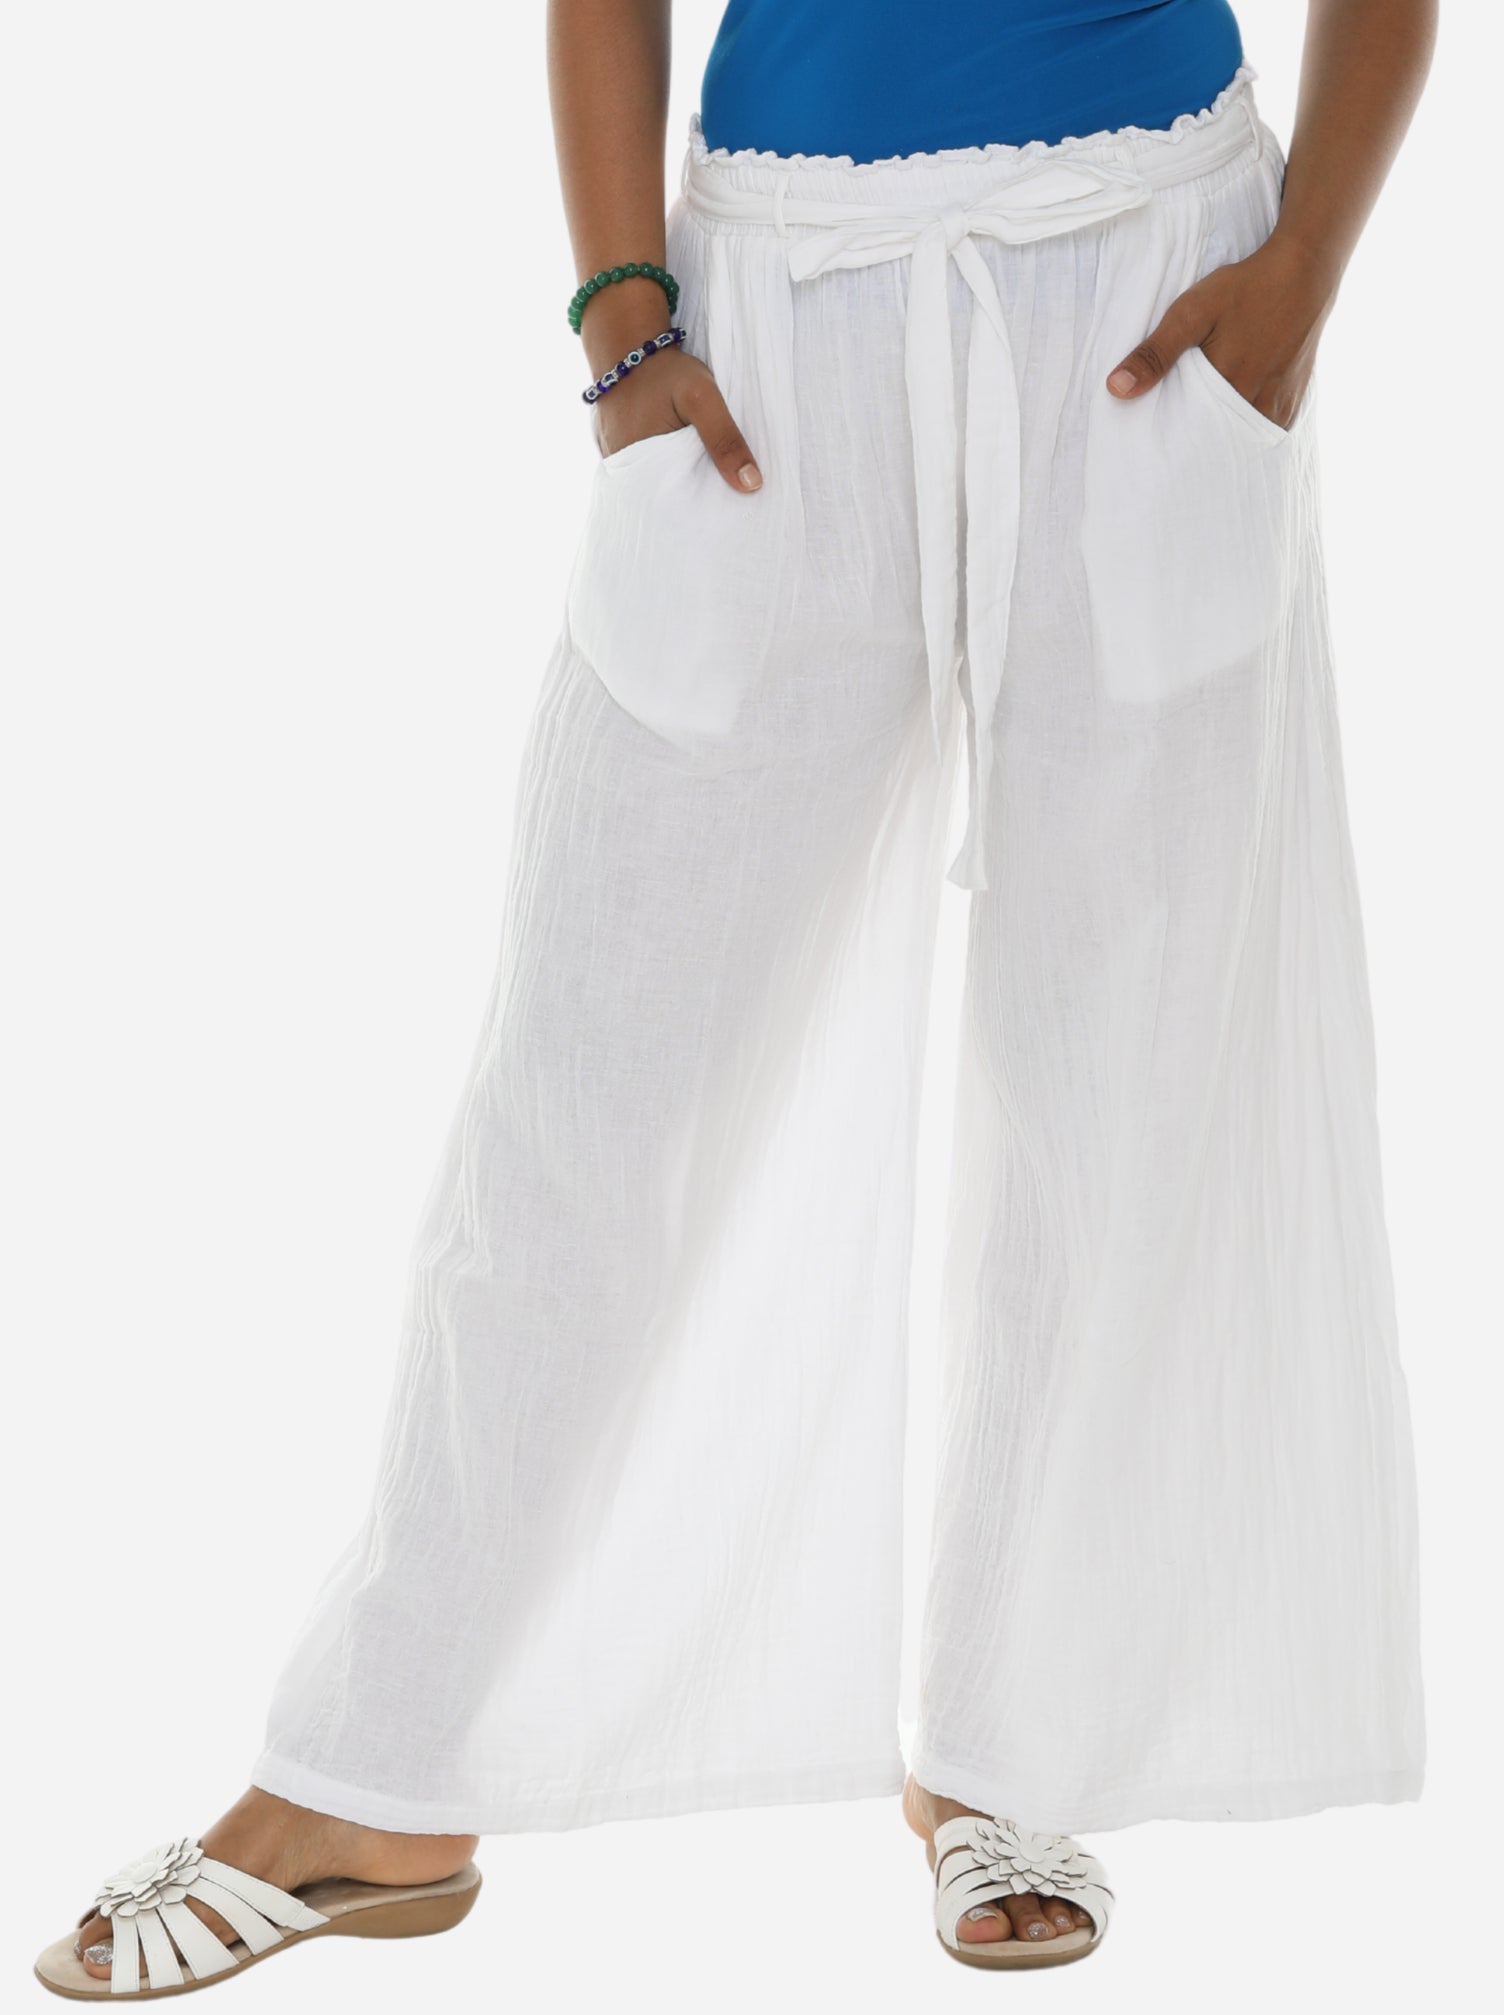 Linen-blend Pants with Belt - White - Ladies | H&M US